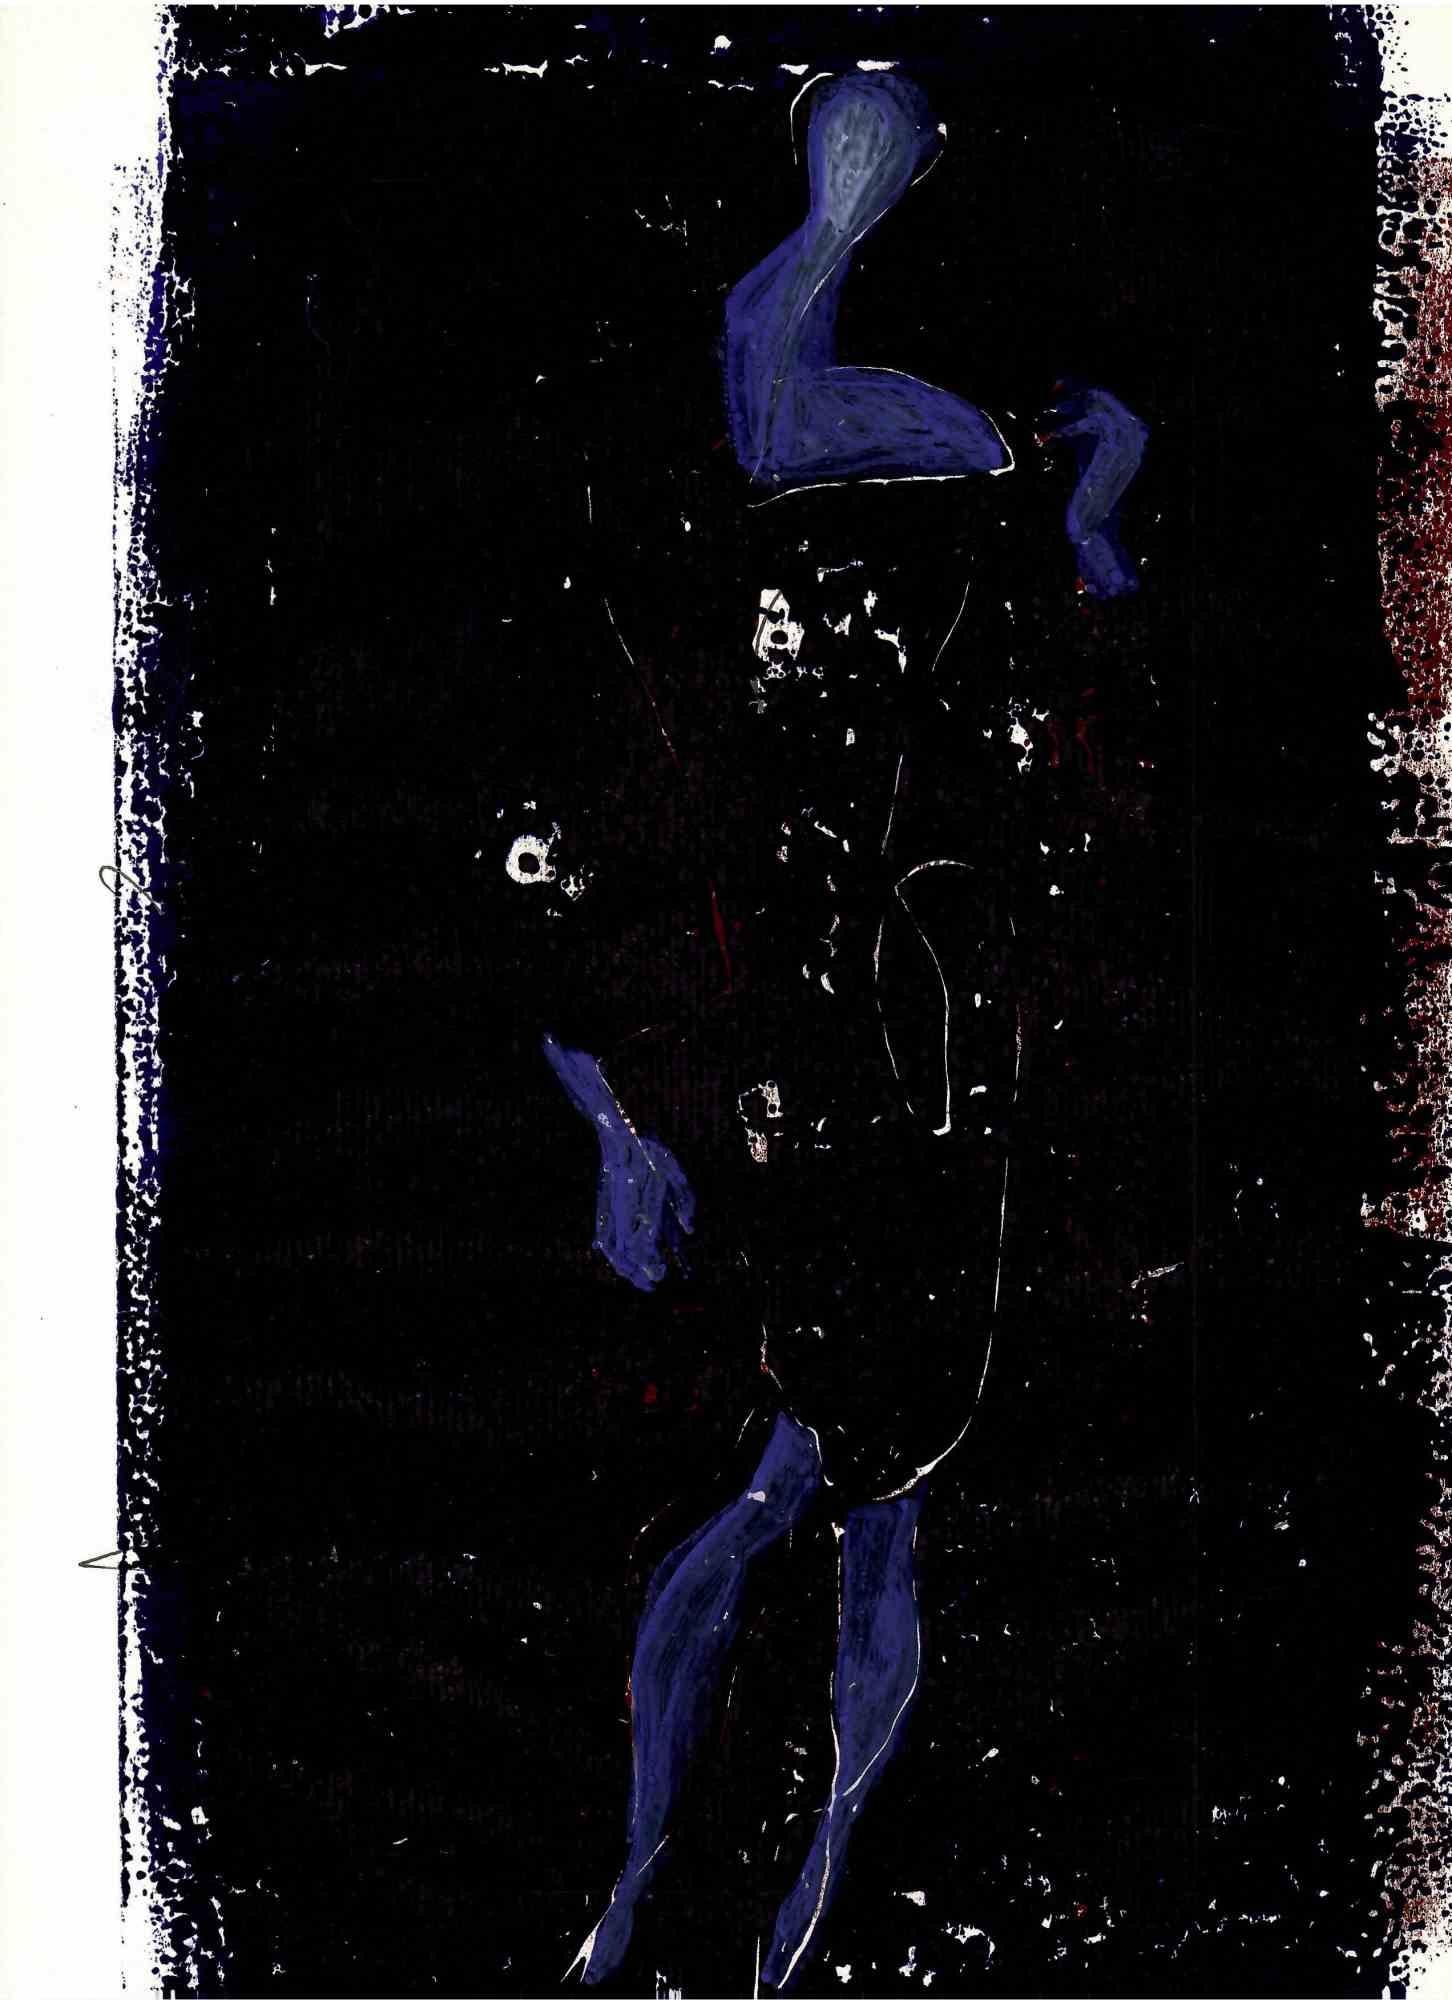 Unknown Abstract Print – Blaue blaue Figur in der dunklen Nacht - Originallithographie - 1970er Jahre